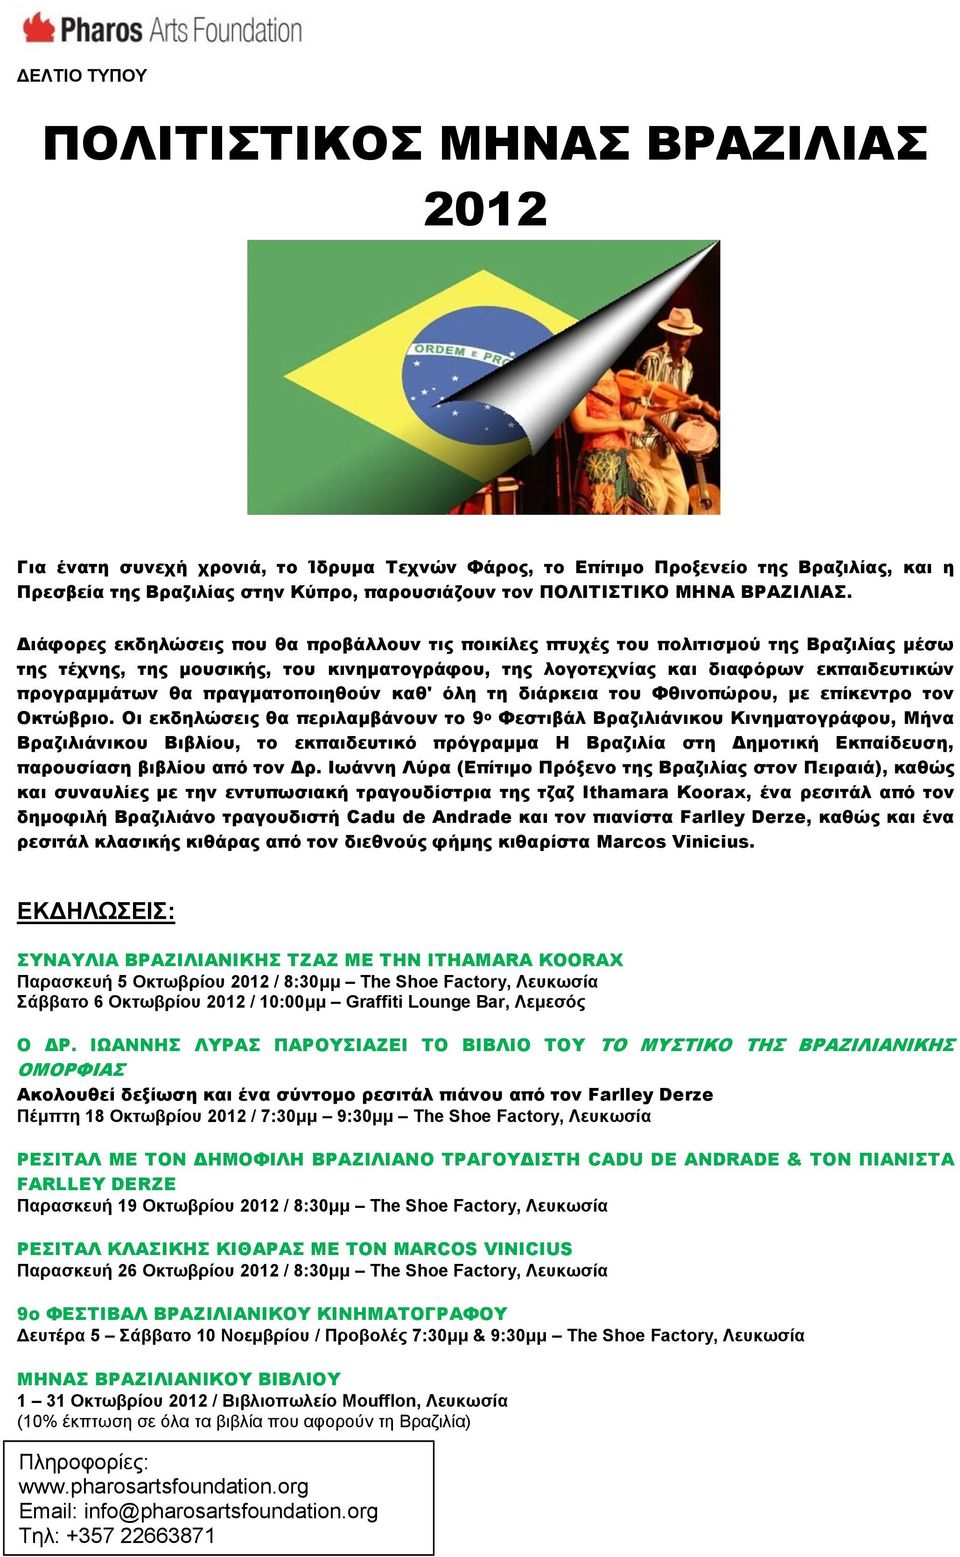 Διάφορες εκδηλώσεις που θα προβάλλουν τις ποικίλες πτυχές του πολιτισμού της Βραζιλίας μέσω της τέχνης, της μουσικής, του κινηματογράφου, της λογοτεχνίας και διαφόρων εκπαιδευτικών προγραμμάτων θα